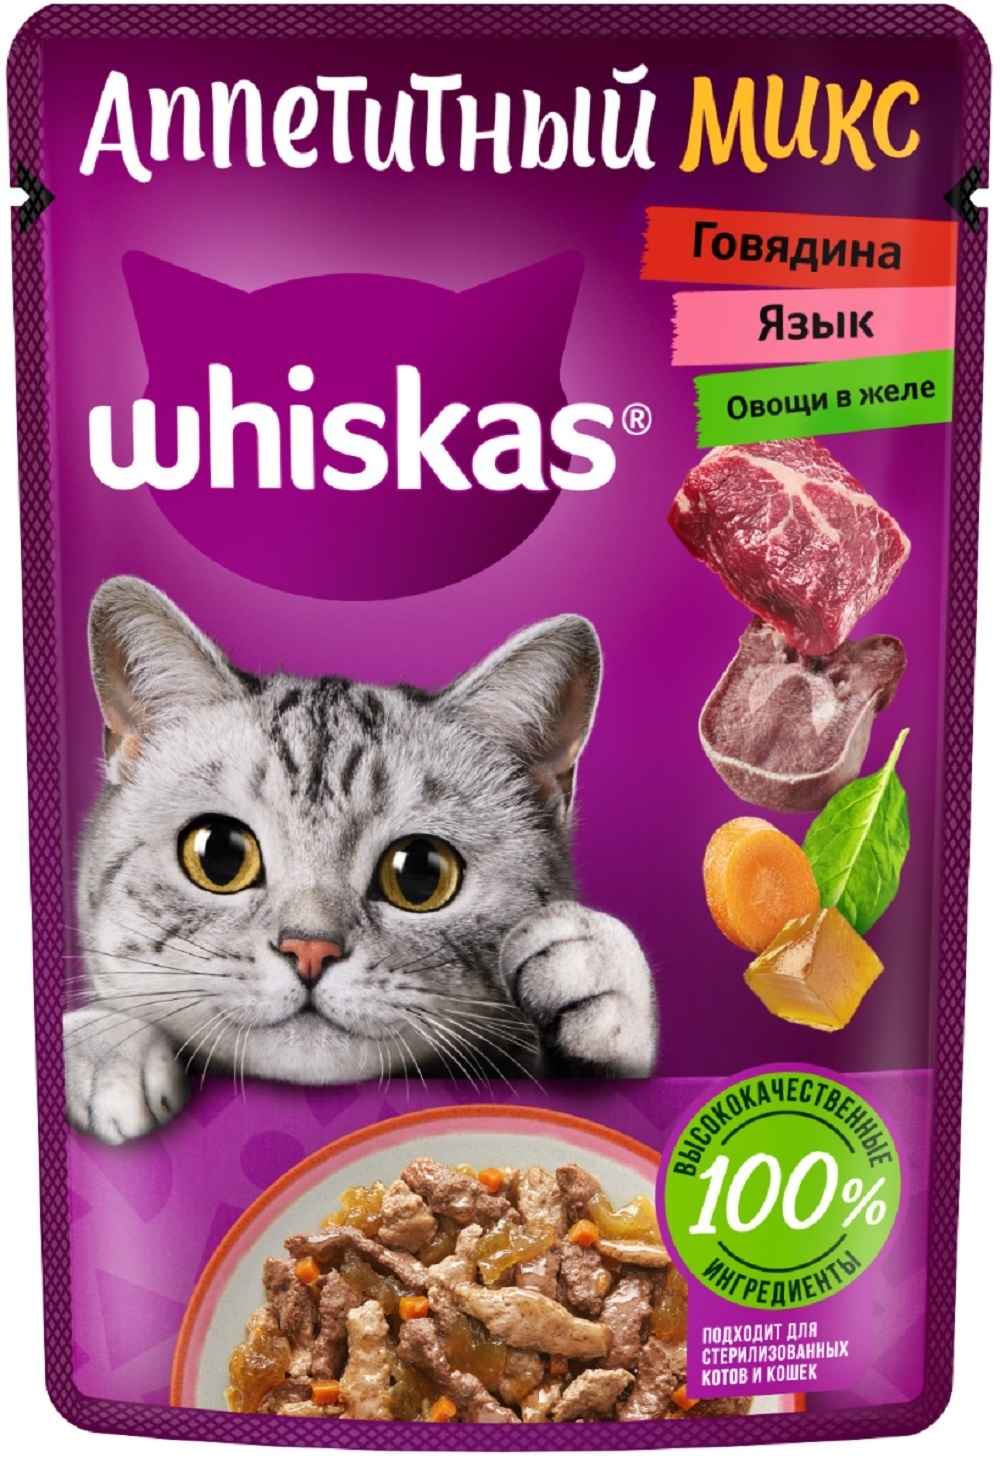 Whiskas Whiskas влажный корм «Аппетитный микс» для кошек с говядиной, языком и овощами в желе (75 г)